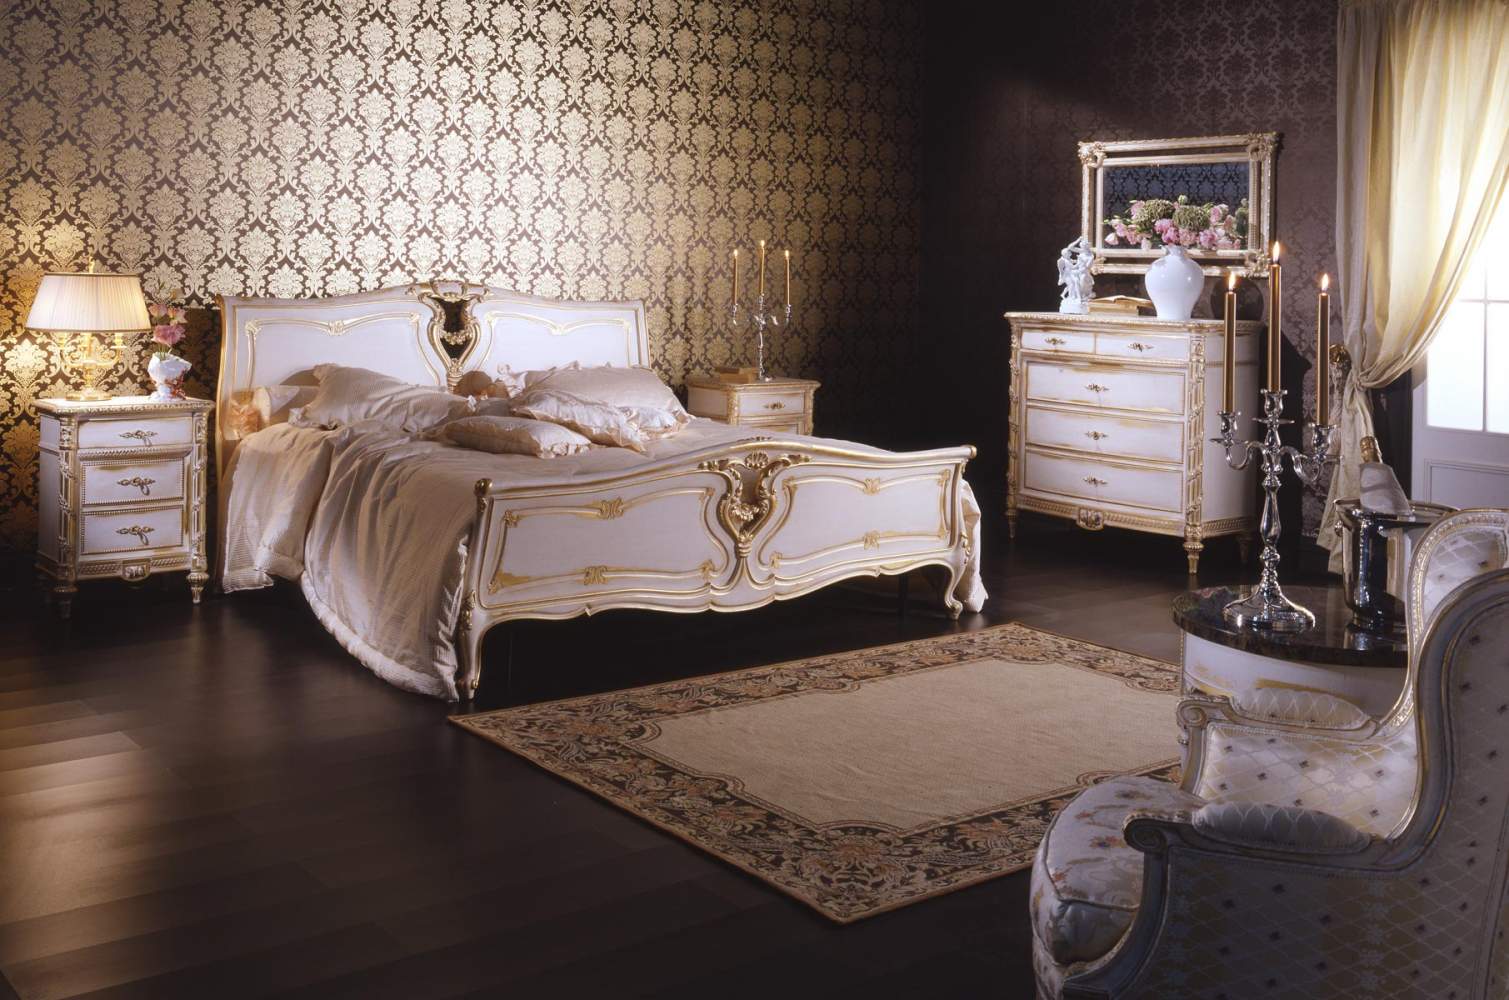 Camera da letto classica in stile Luigi XVI composta da letto, comodino e comò, tutti in legno intagliato con finitura bianco su oro